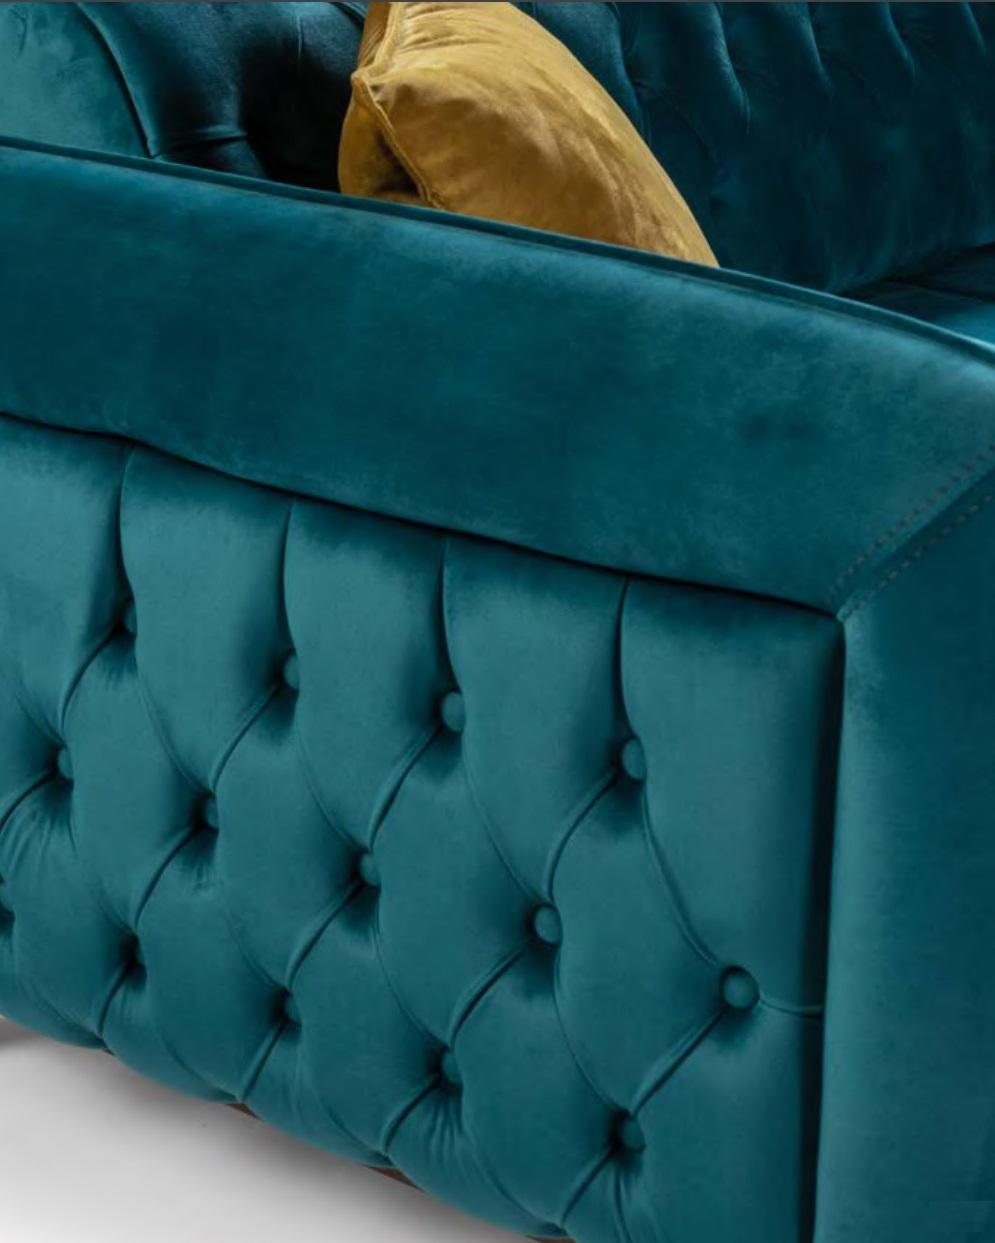 Sitzmöbel, Textil Luxus Ecksofa Couch Europe Chesterfield Made in Ecksofa Turkis Stoffsofa JVmoebel